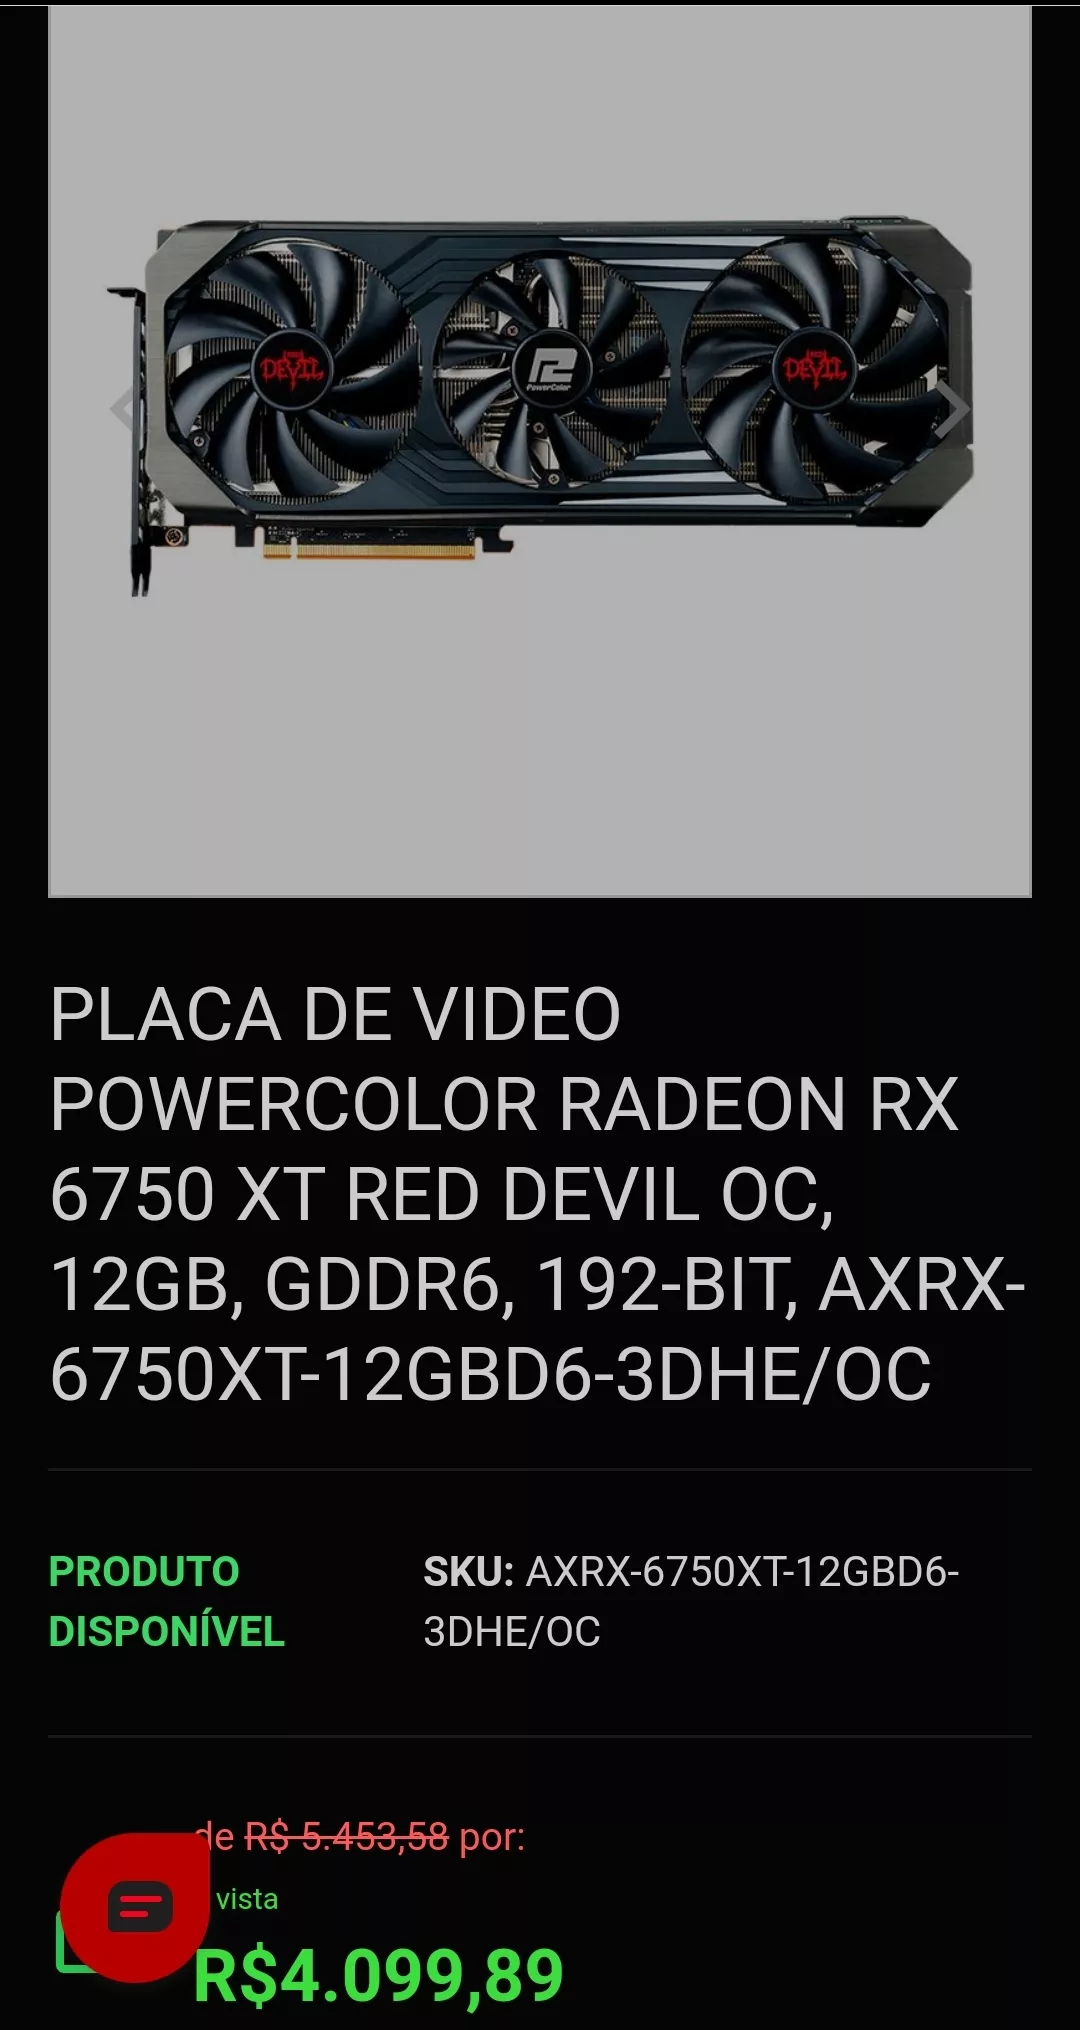 Placa De Video Powercolor Radeon Rx 6750 Xt Red Devil Oc, 12gb, Gddr6, 192-bit, Axrx-6750xt-12gbd6-3